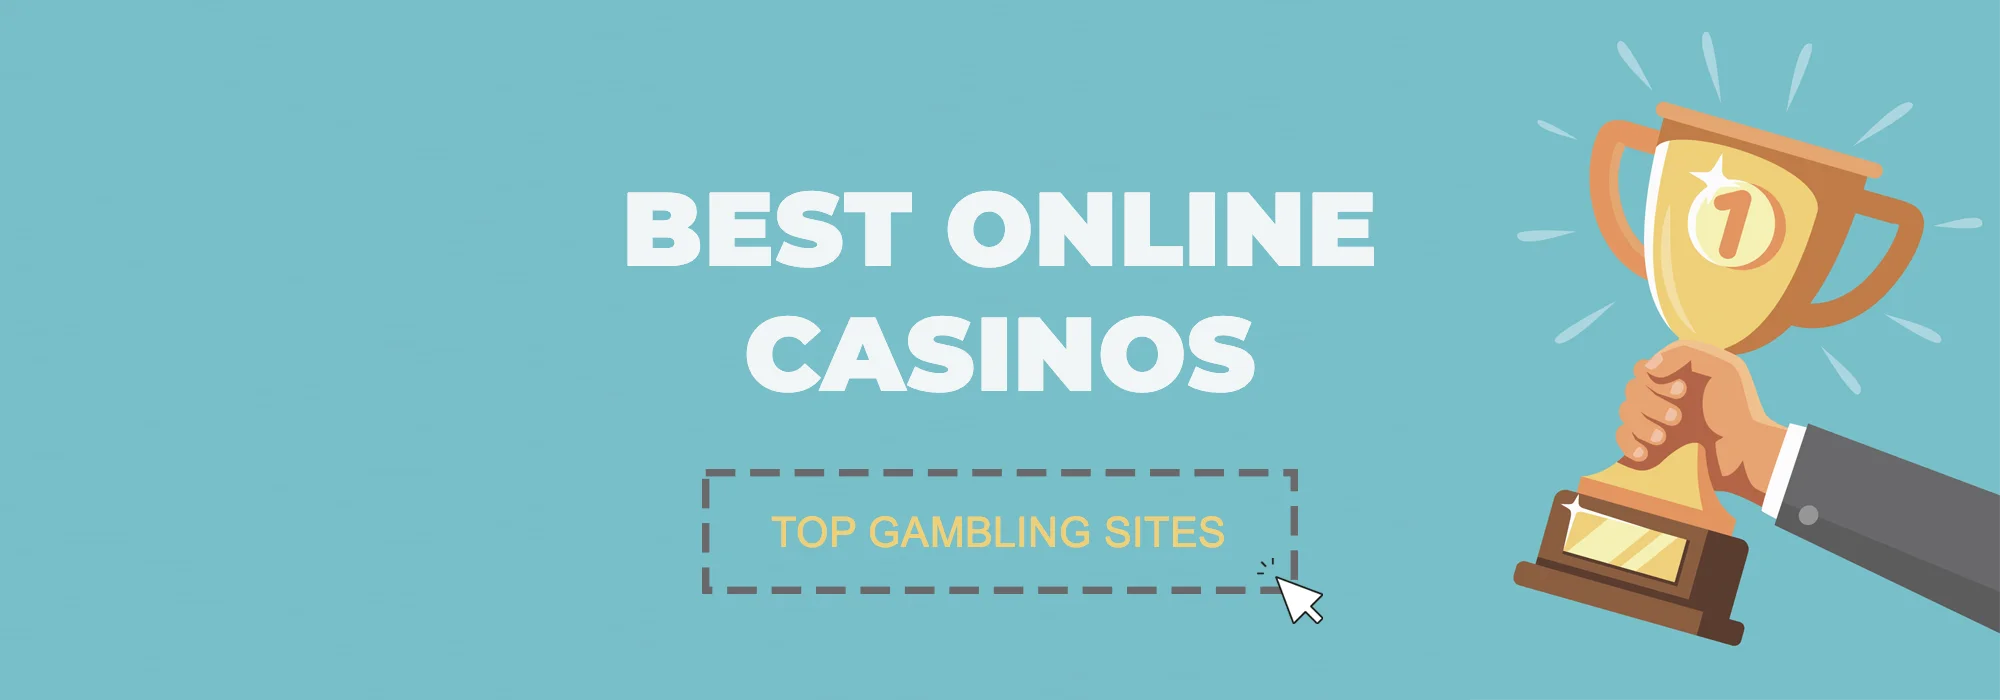 Best Online Casinos - Top Real Money Gambling Sites